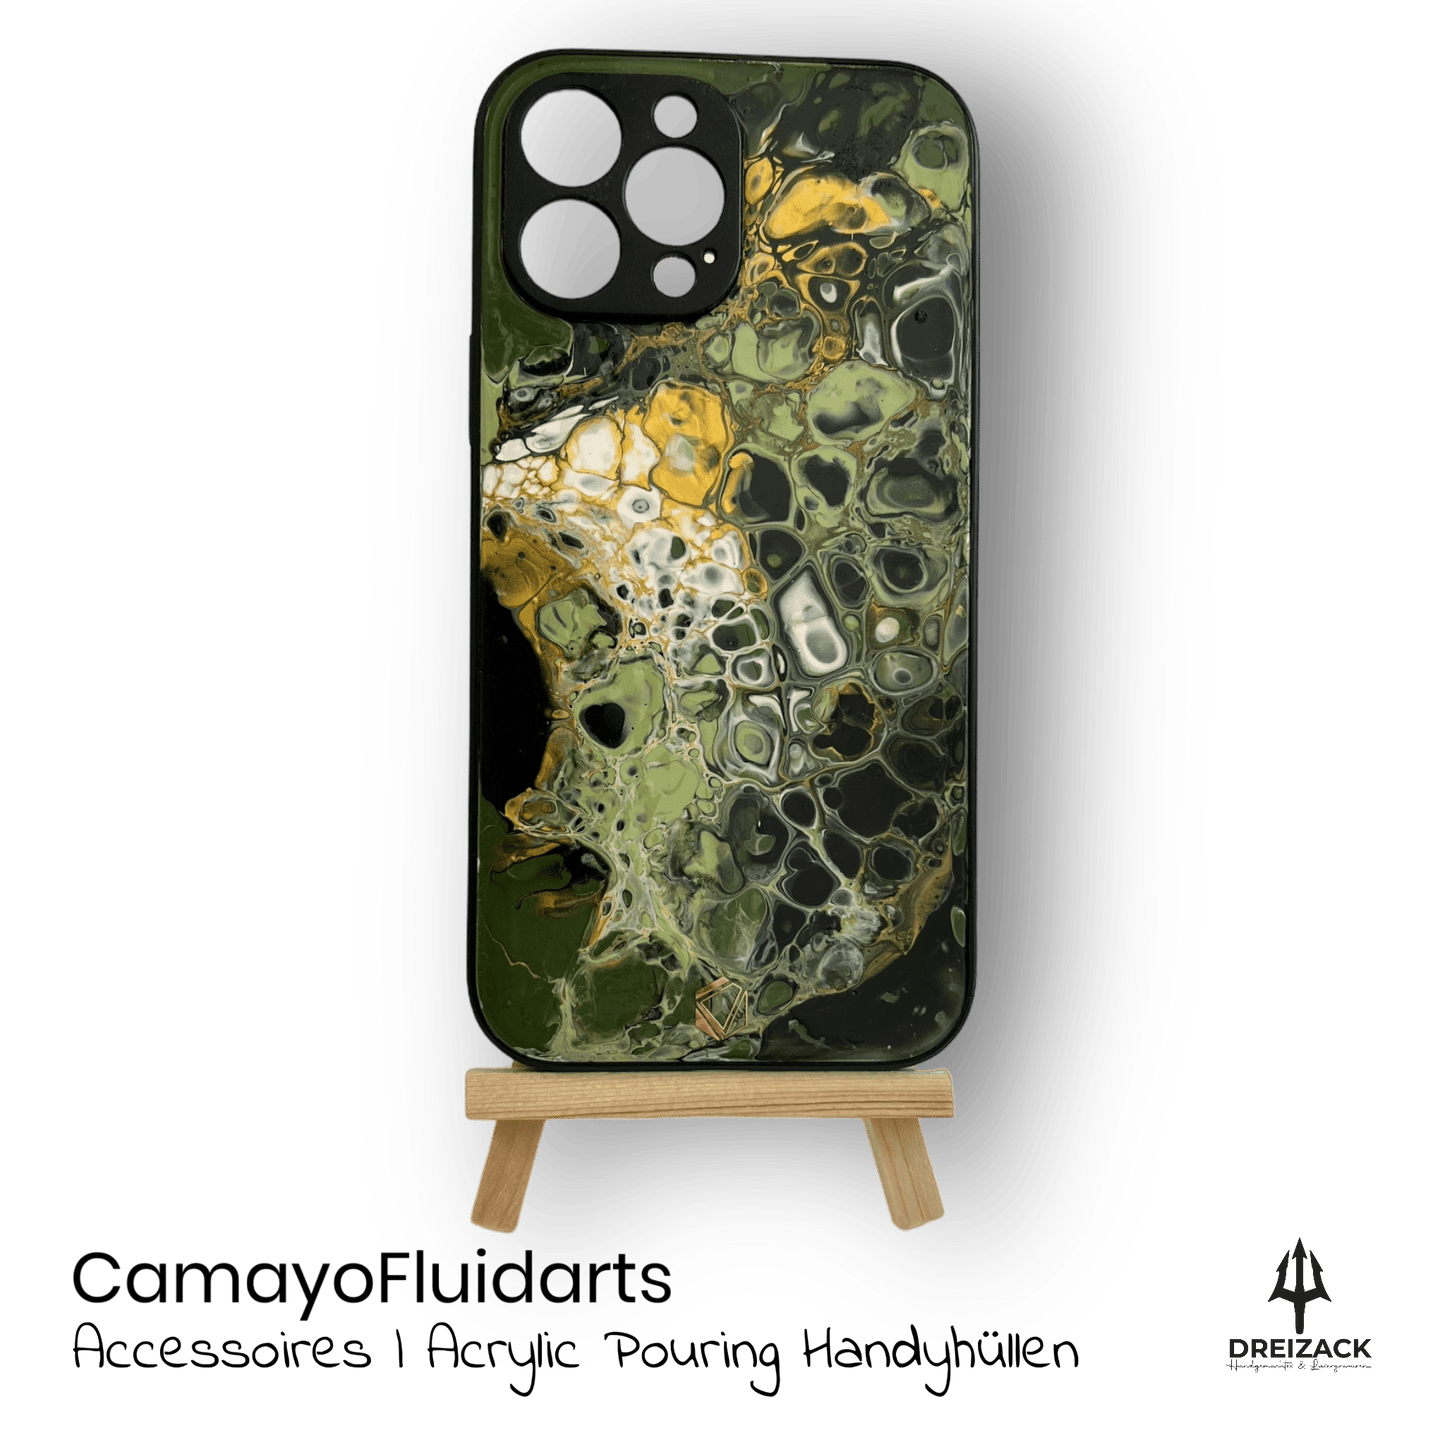 Individuelle Handyhüllen von Camayo Fluidarts iPhone 13 Pro Max Accessoires & Taschen Camayo Fluidarts oesterreich handgemachte geschenke in wien